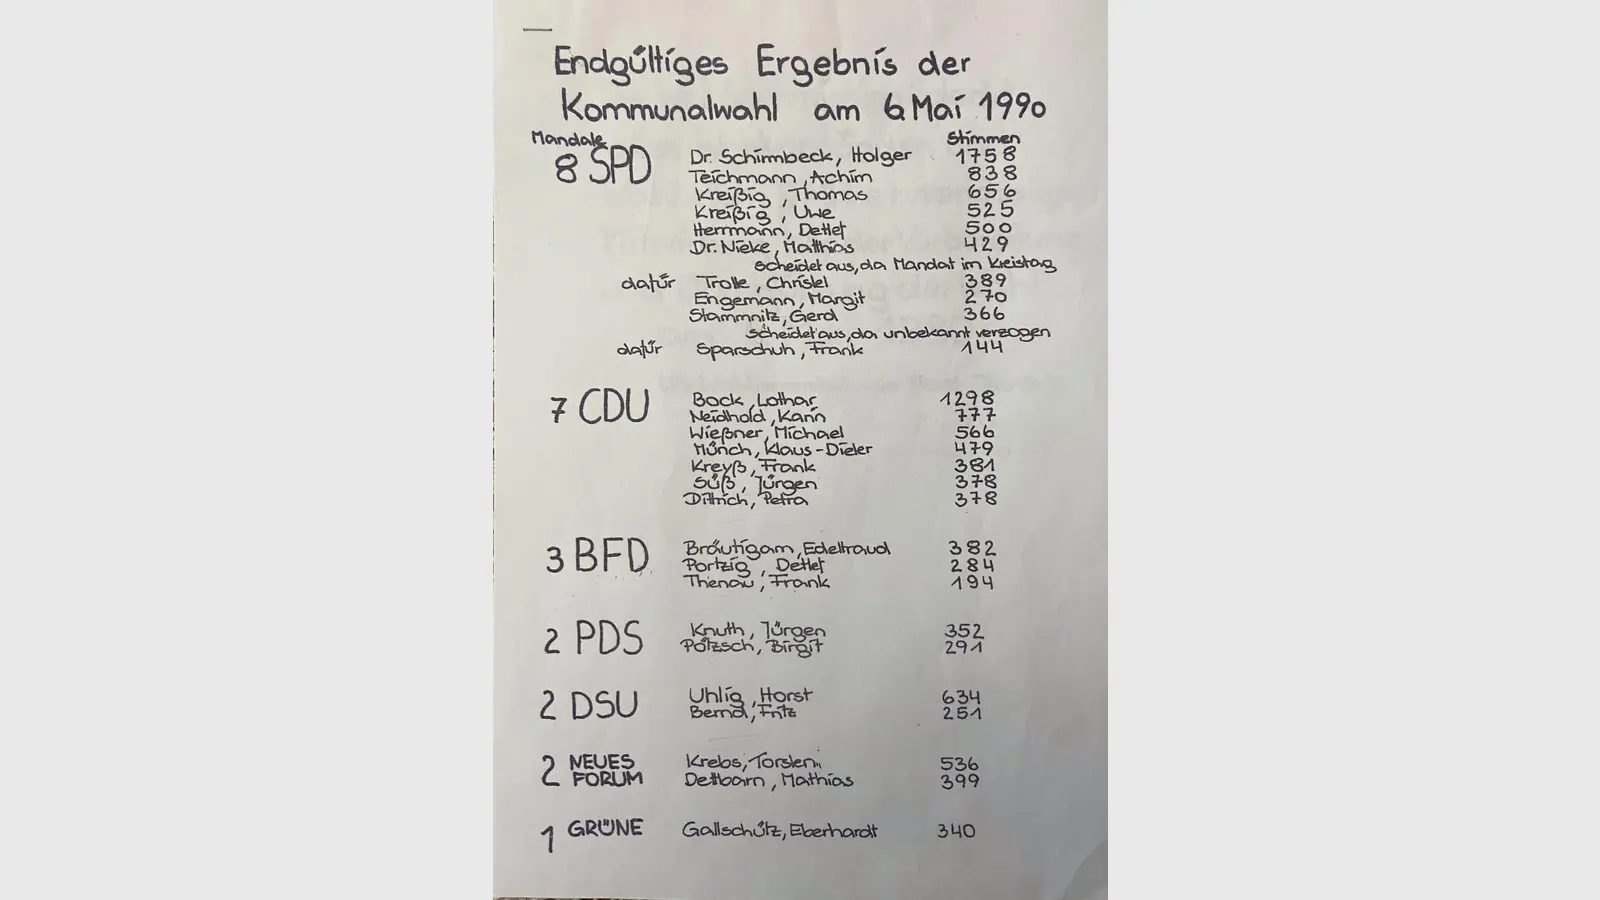 Die Ergebnisse der Kommunalwahl von 1990 bewahrt Thomas Kreyßig in einer Mappe auf. (Foto: taucha-kompakt.de)